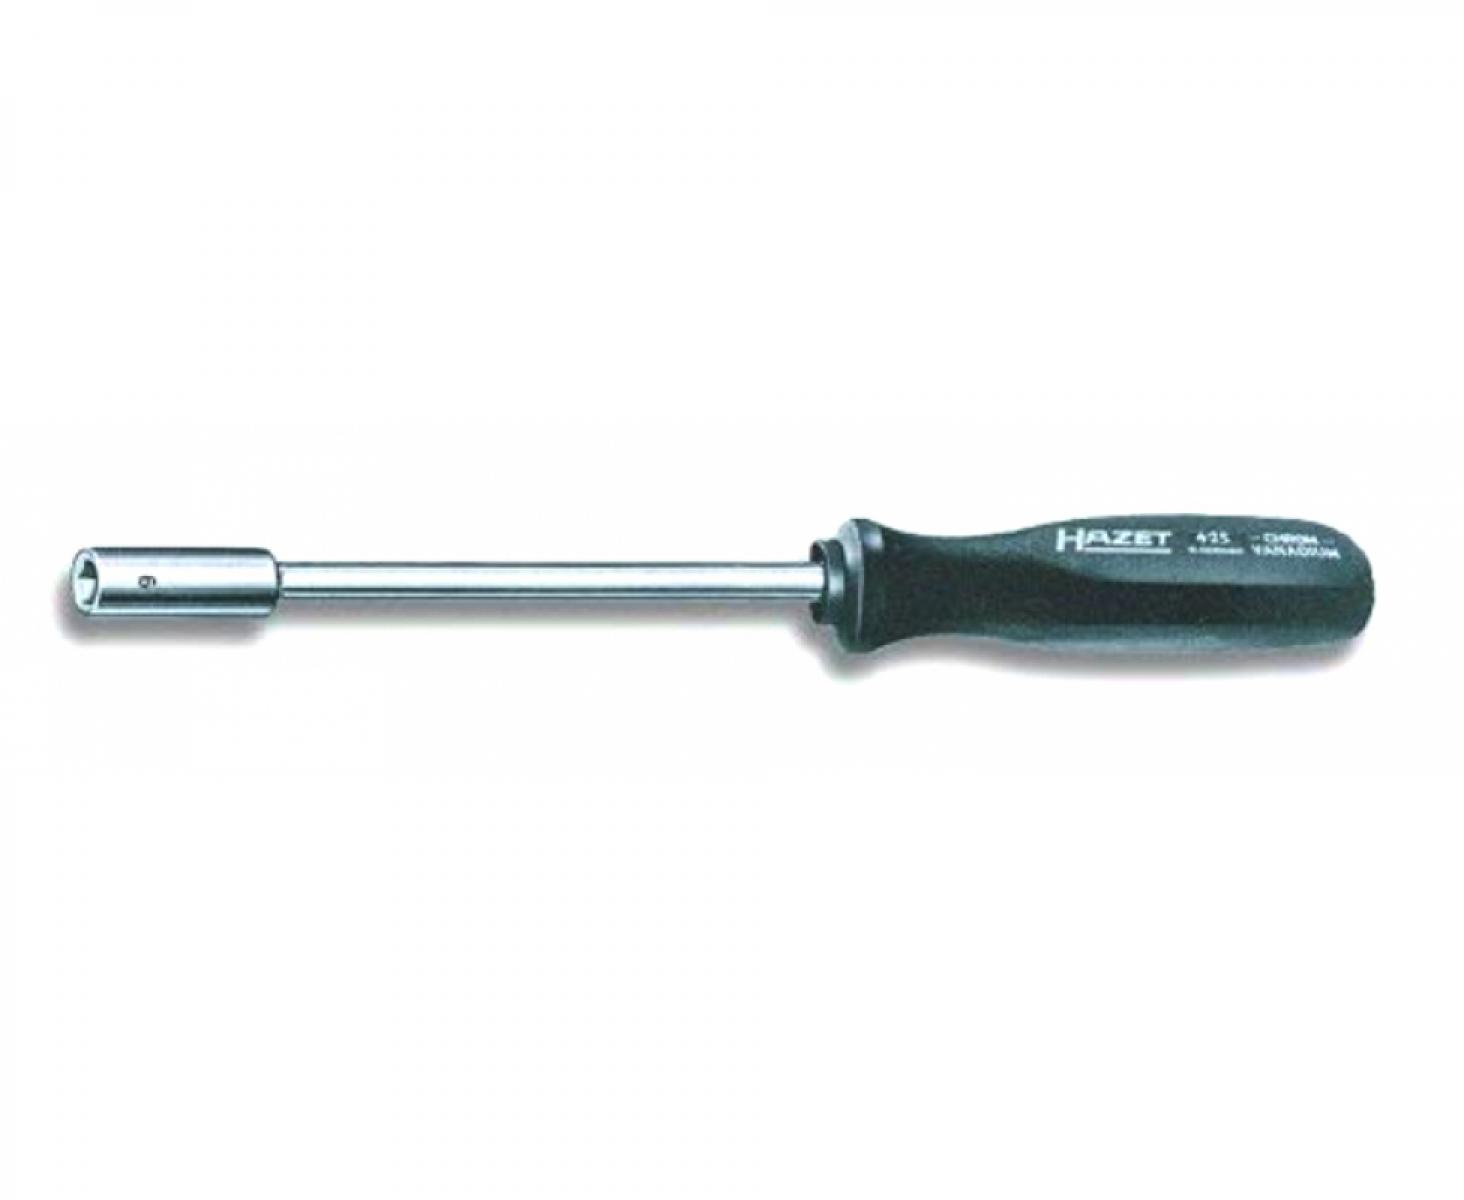 Отвертка-торцовый ключ HEX Nut 6х125 мм Hazet 425-6